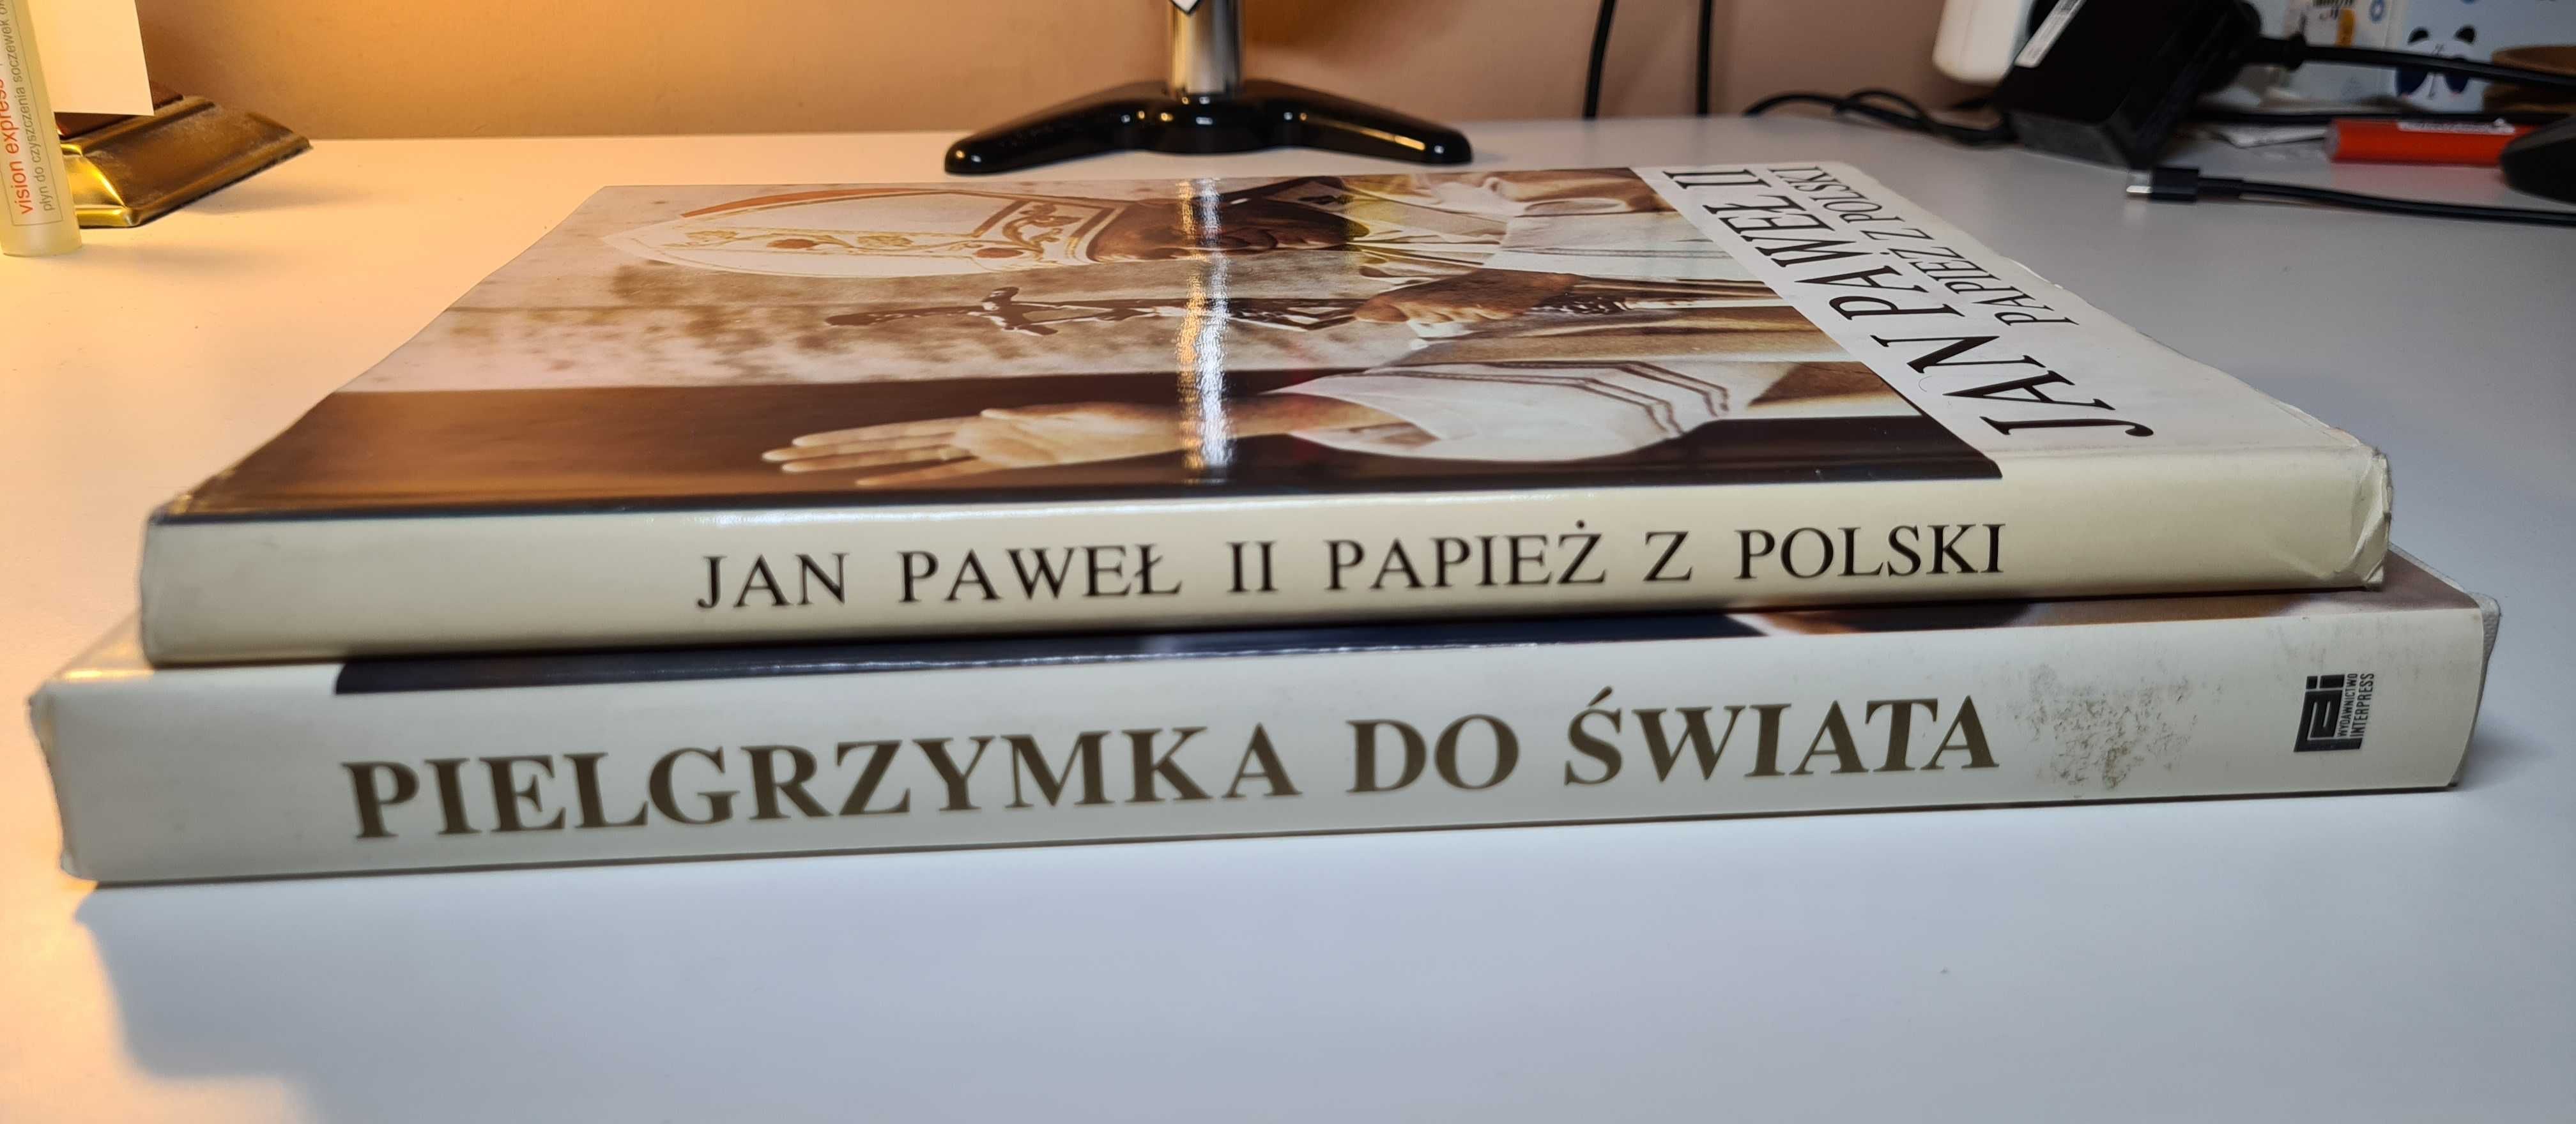 2 albumy - Jan Paweł II Papież z Polski & Pielgrzymka do świata